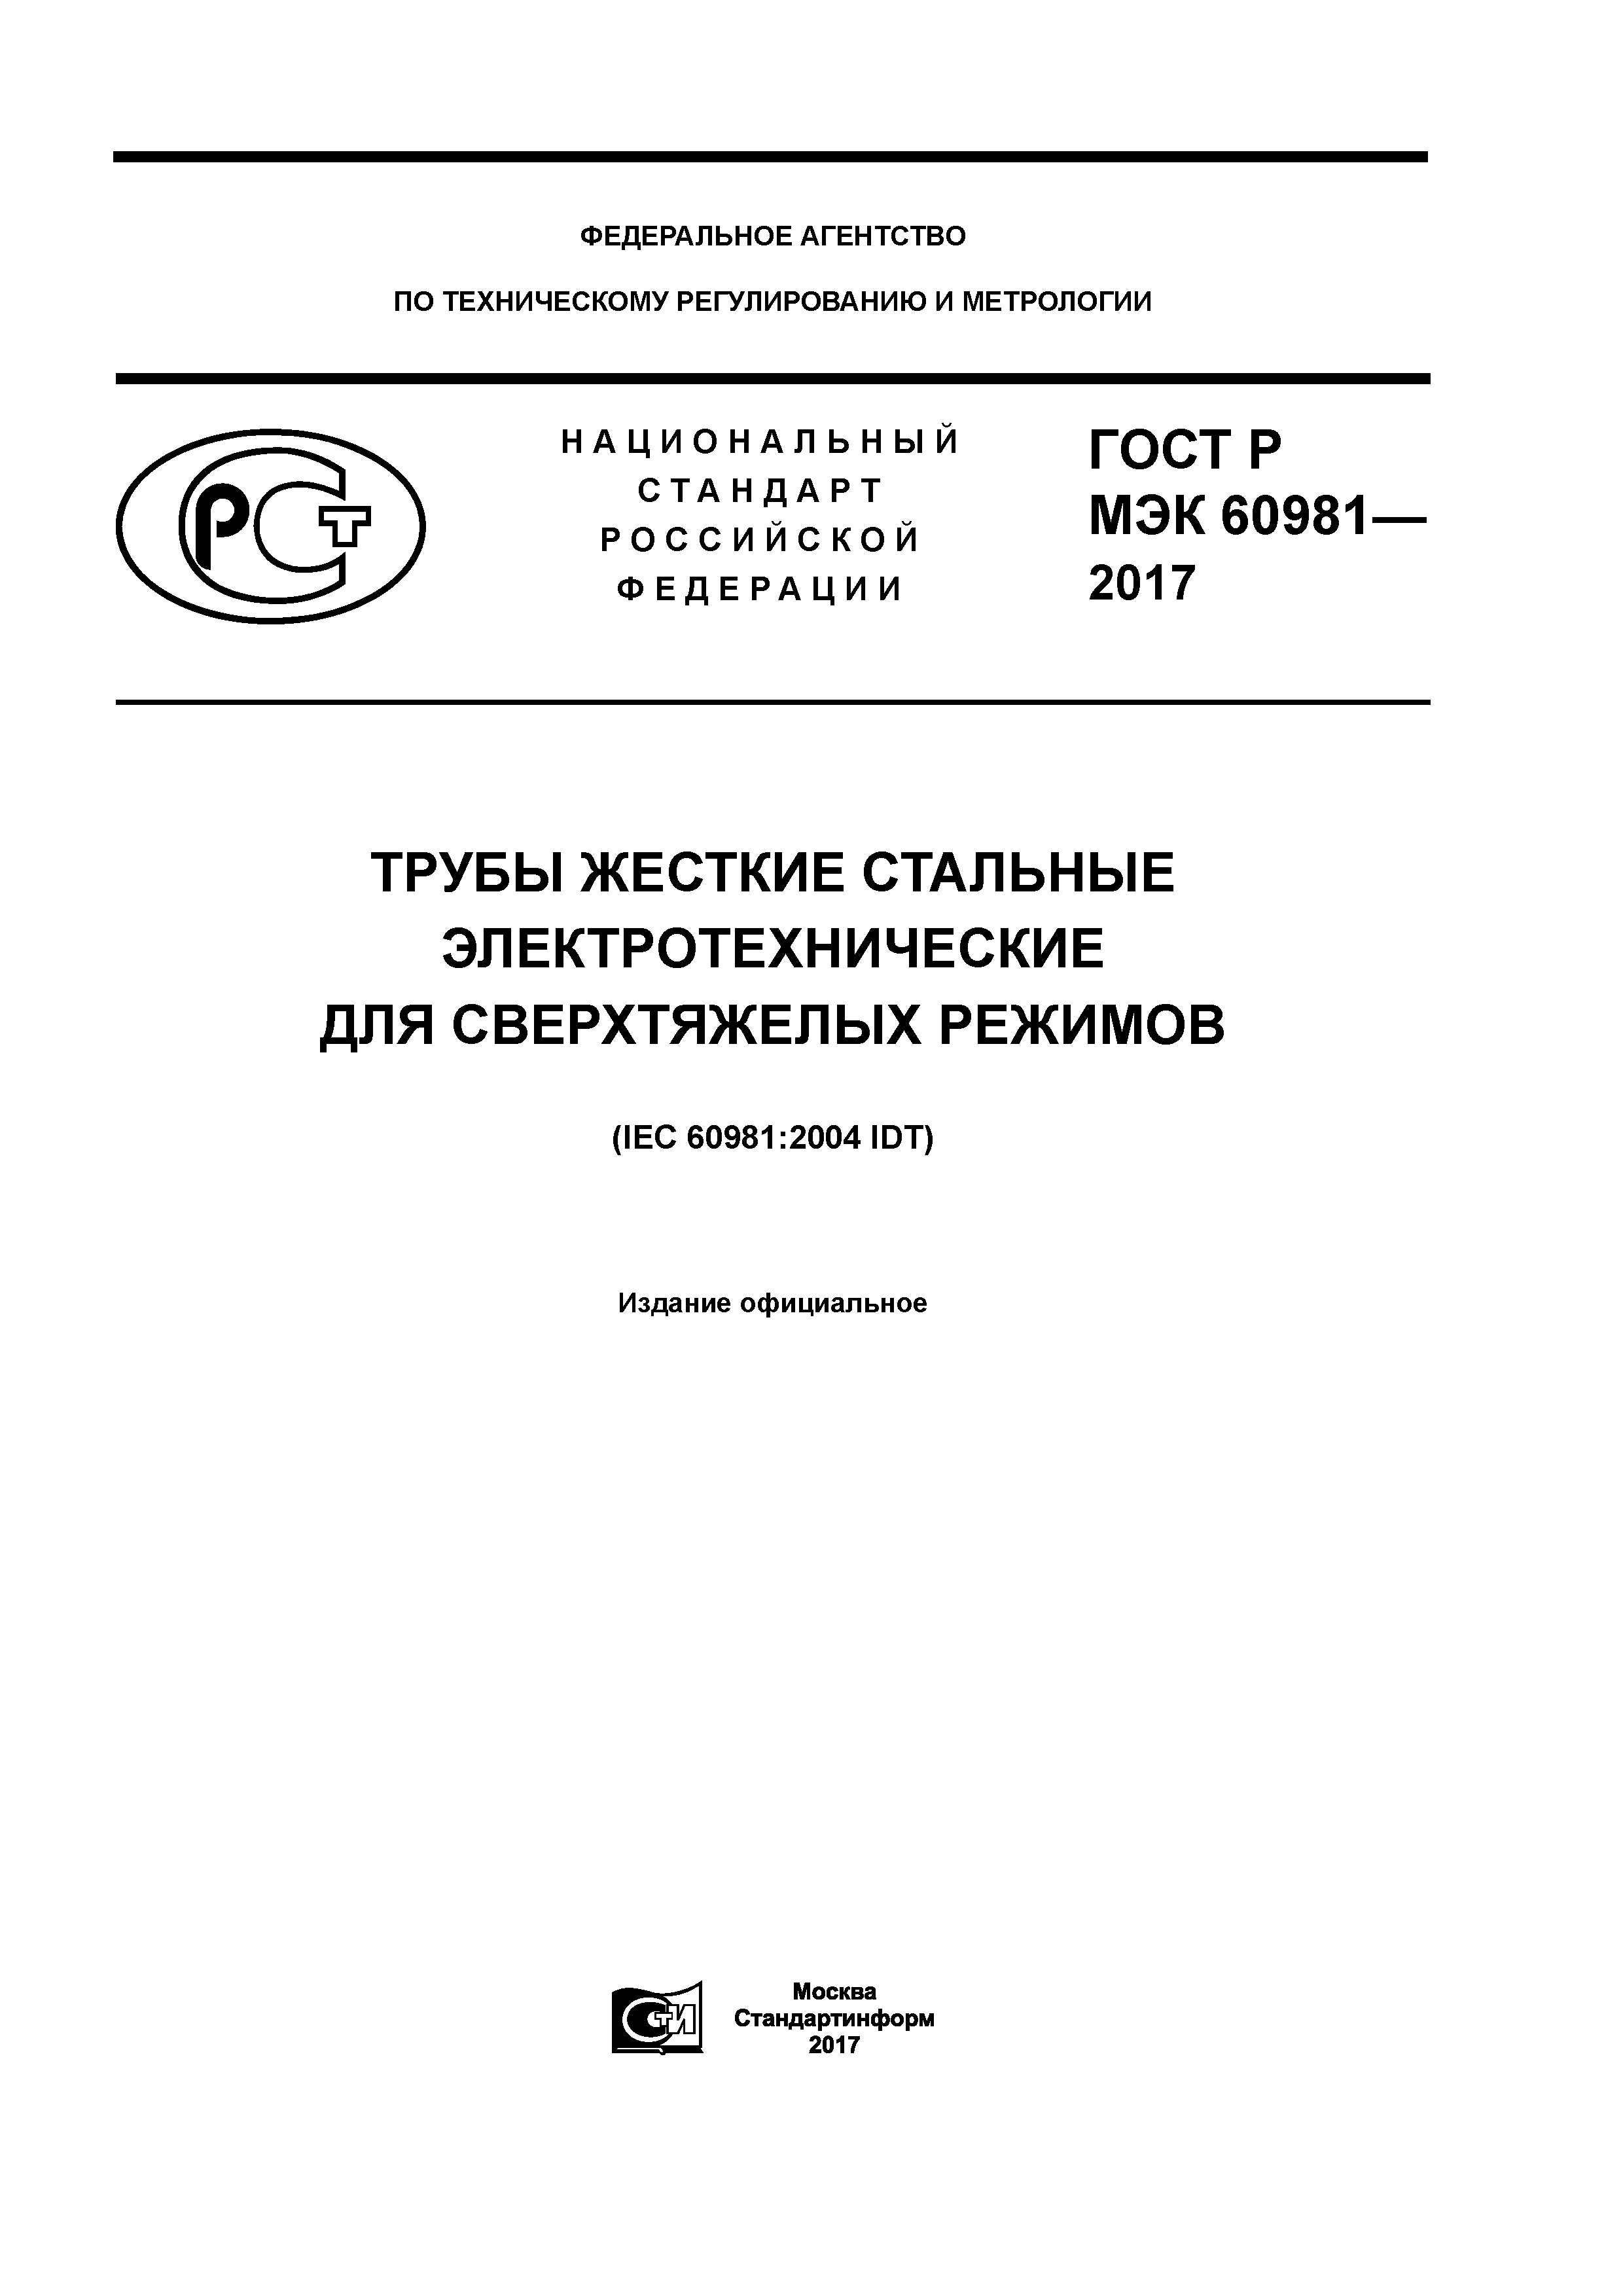 ГОСТ Р МЭК 60981-2017